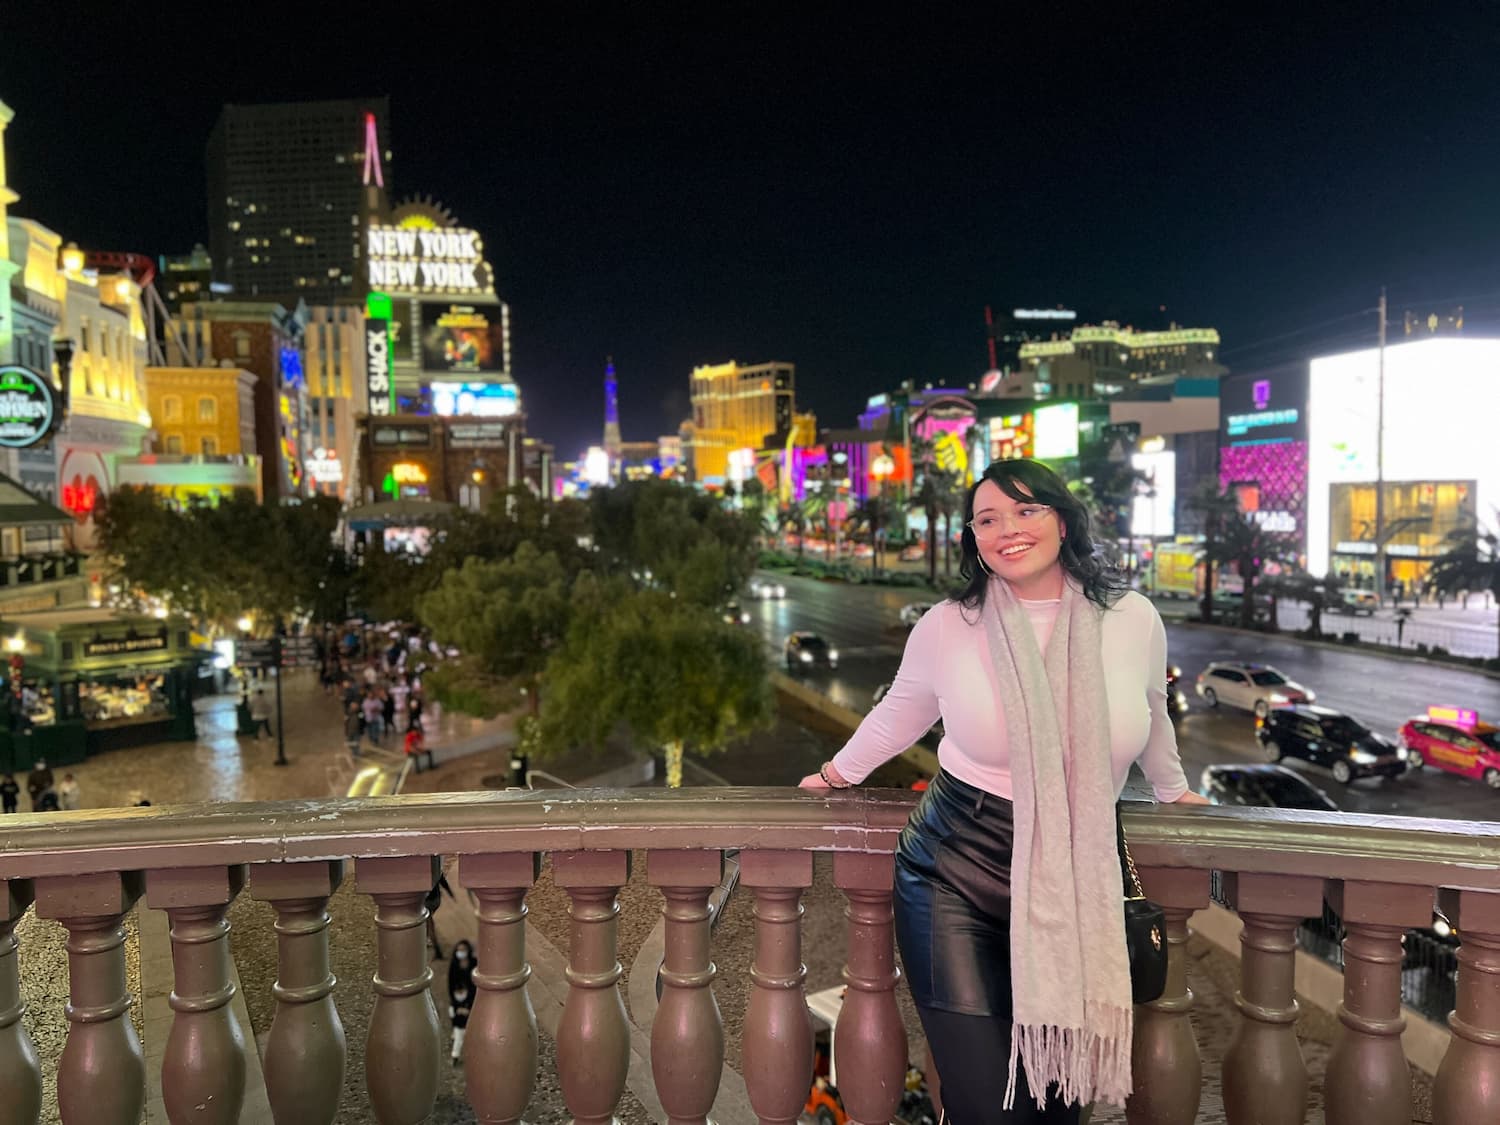 Samantha in Las Vegas